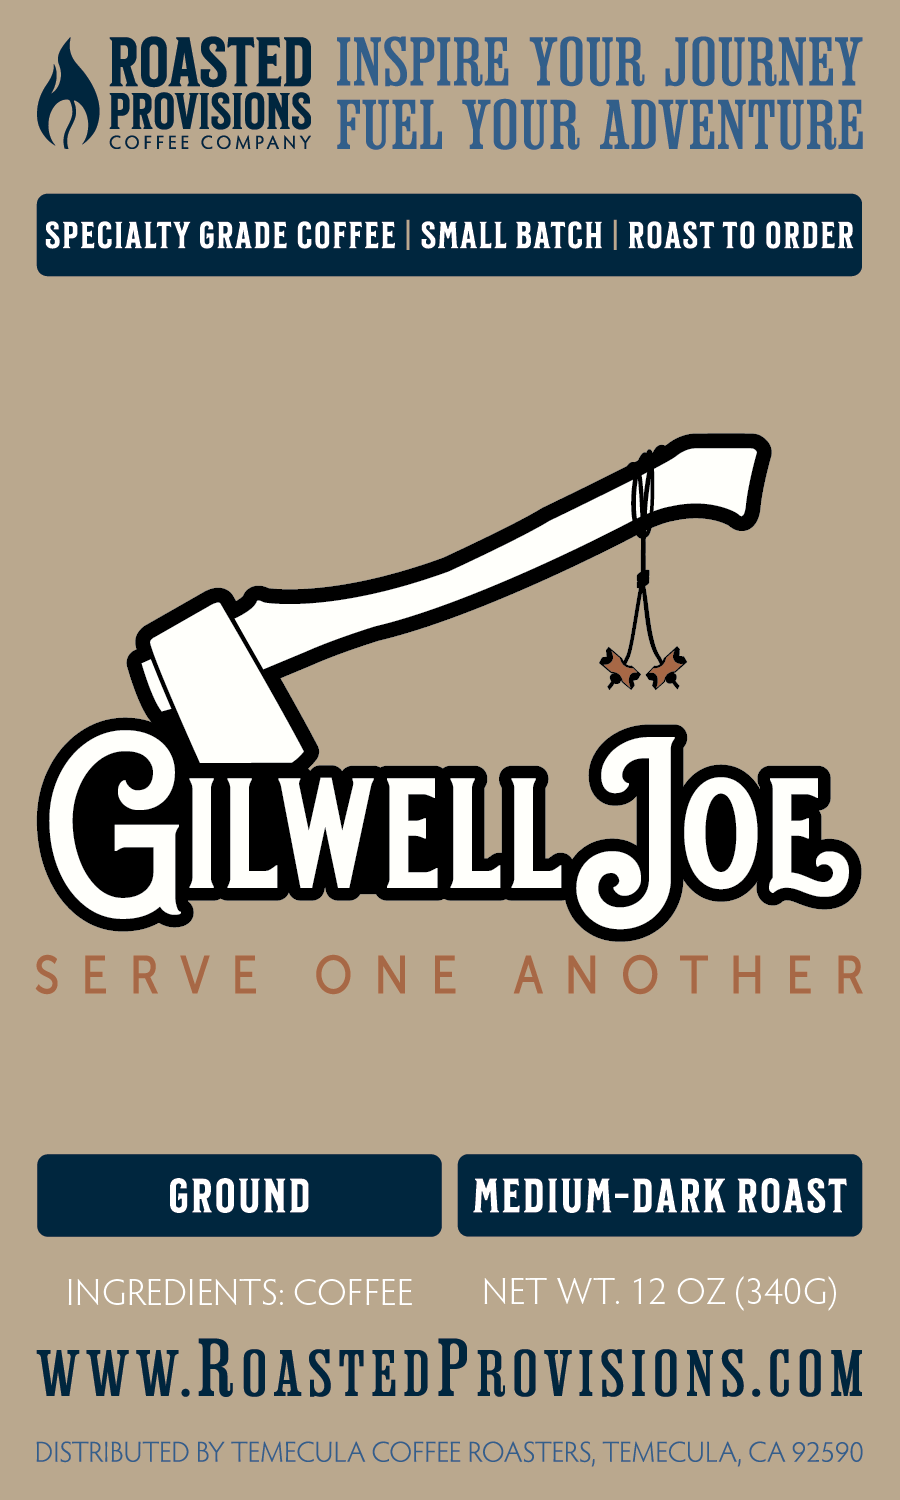 Gilwell Joe